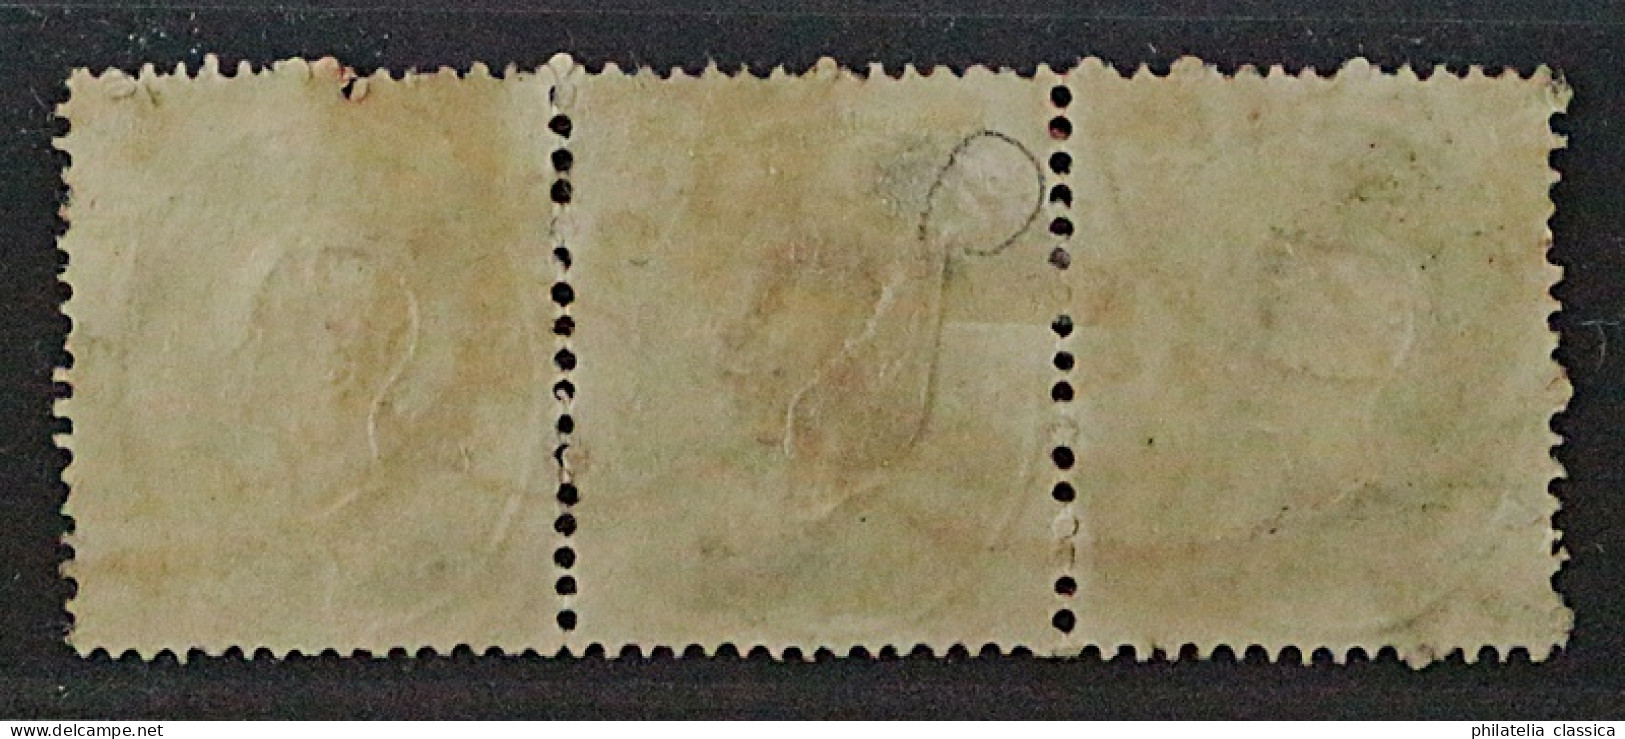 1861, ÖSTERREICH 19 DREIERSTREIFEN Stempel ROT + Schwarz, SELTEN, Geprüft 570,-€ - Oblitérés